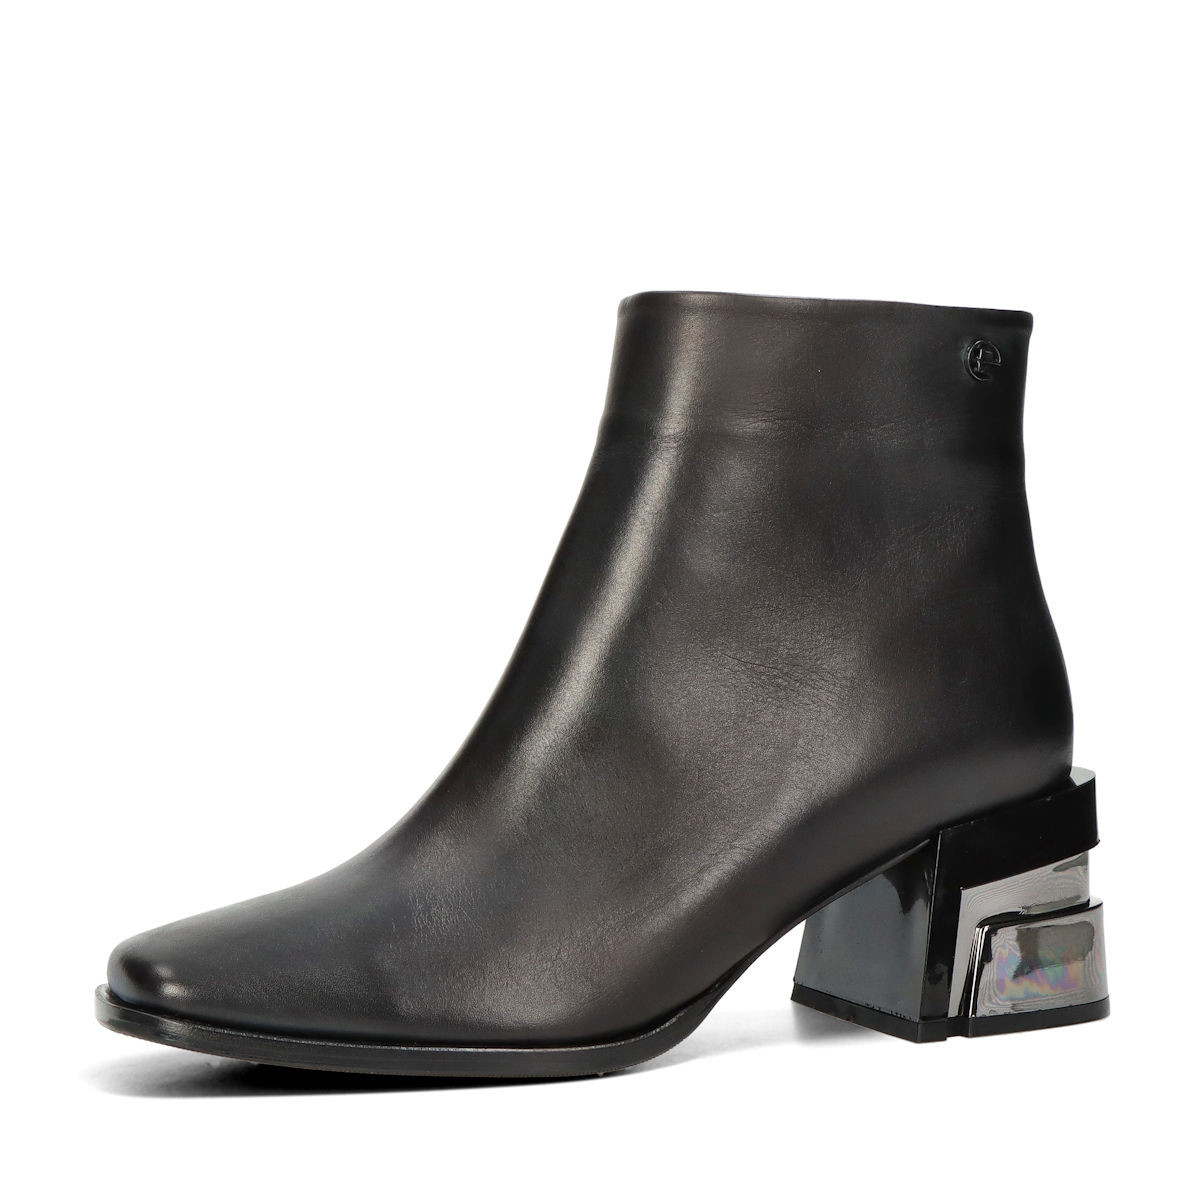 ETIMEĒ dámské elegantní kotníkové boty na zip - černé - 36